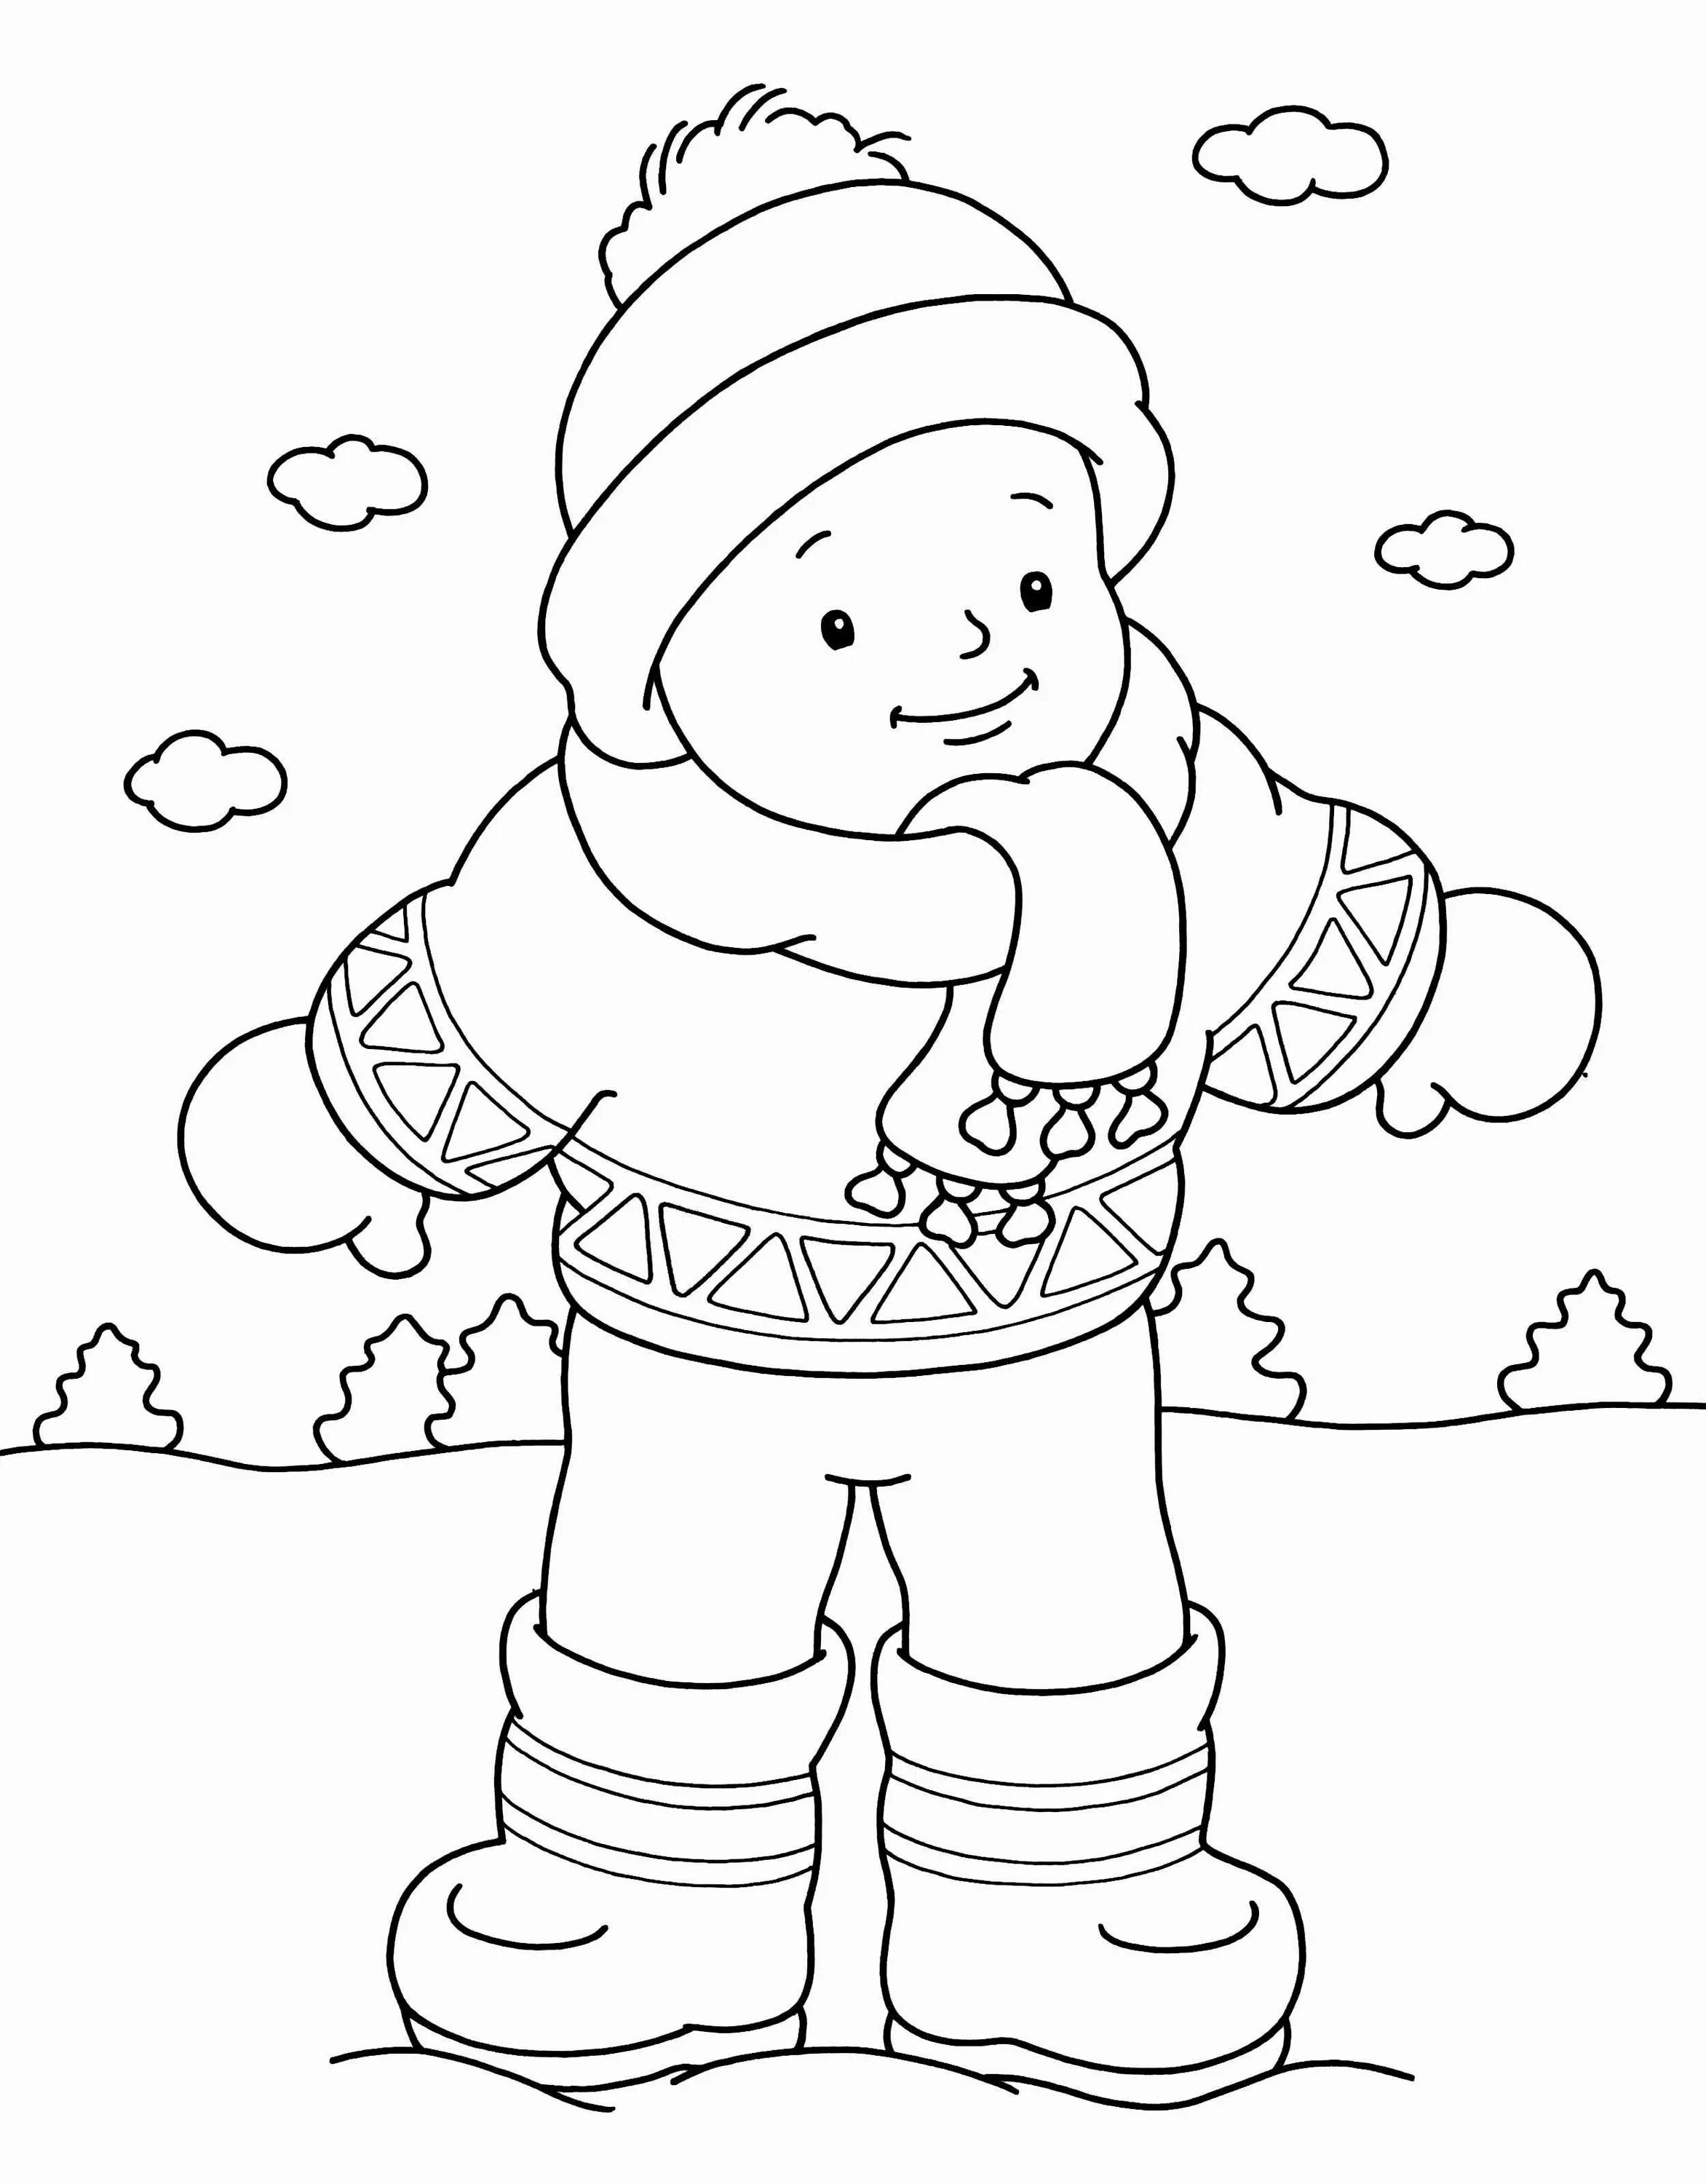 Раскраска для детей Девочка в зимней одежде | Раскраска для детей, Раскраски, Для детей